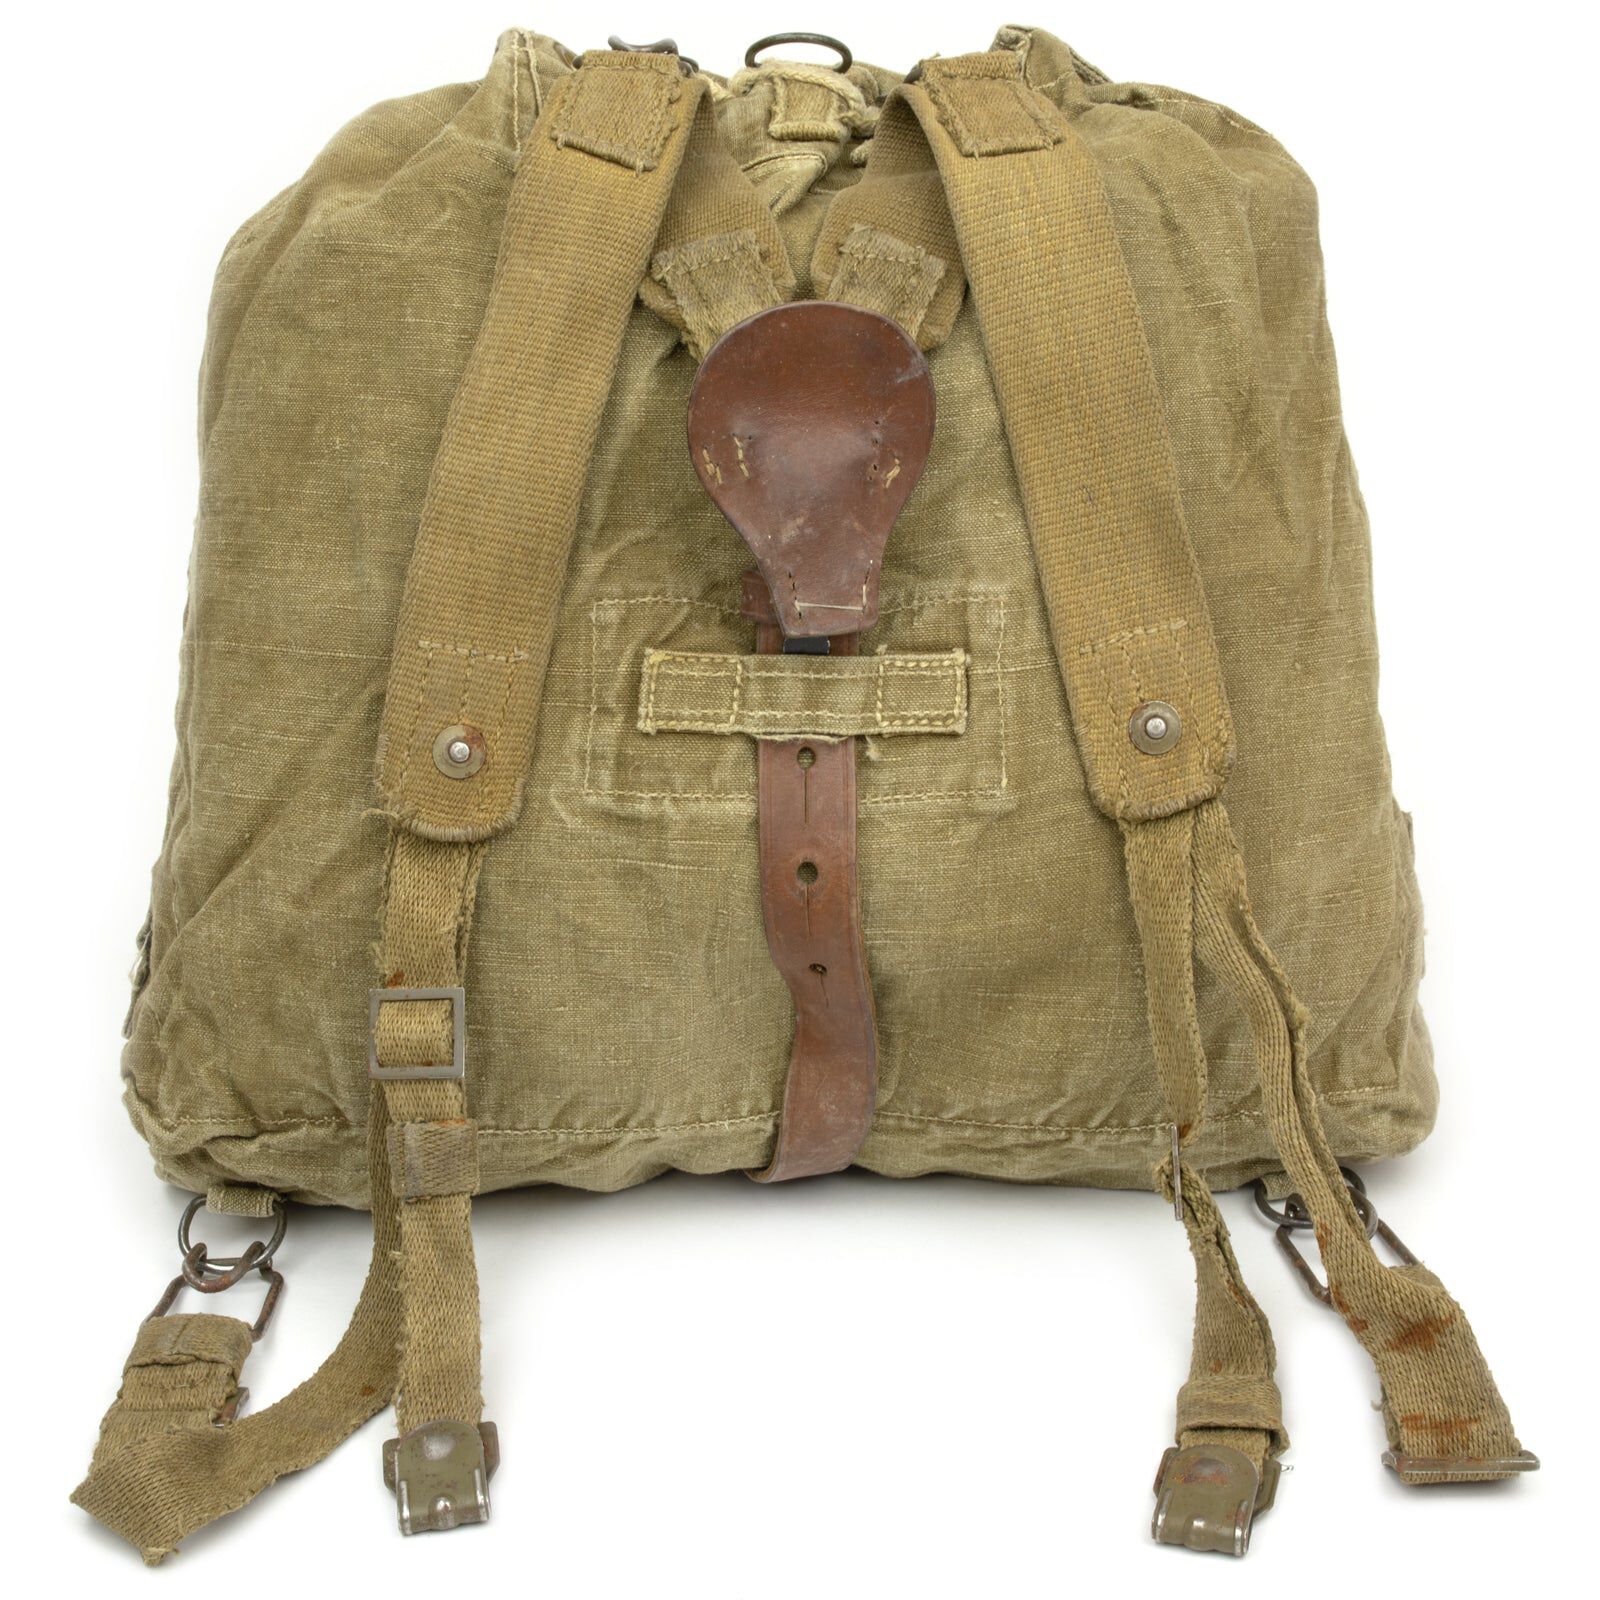 Buy Czech Army Linen Backpack for USD 29.99 | Swisslink